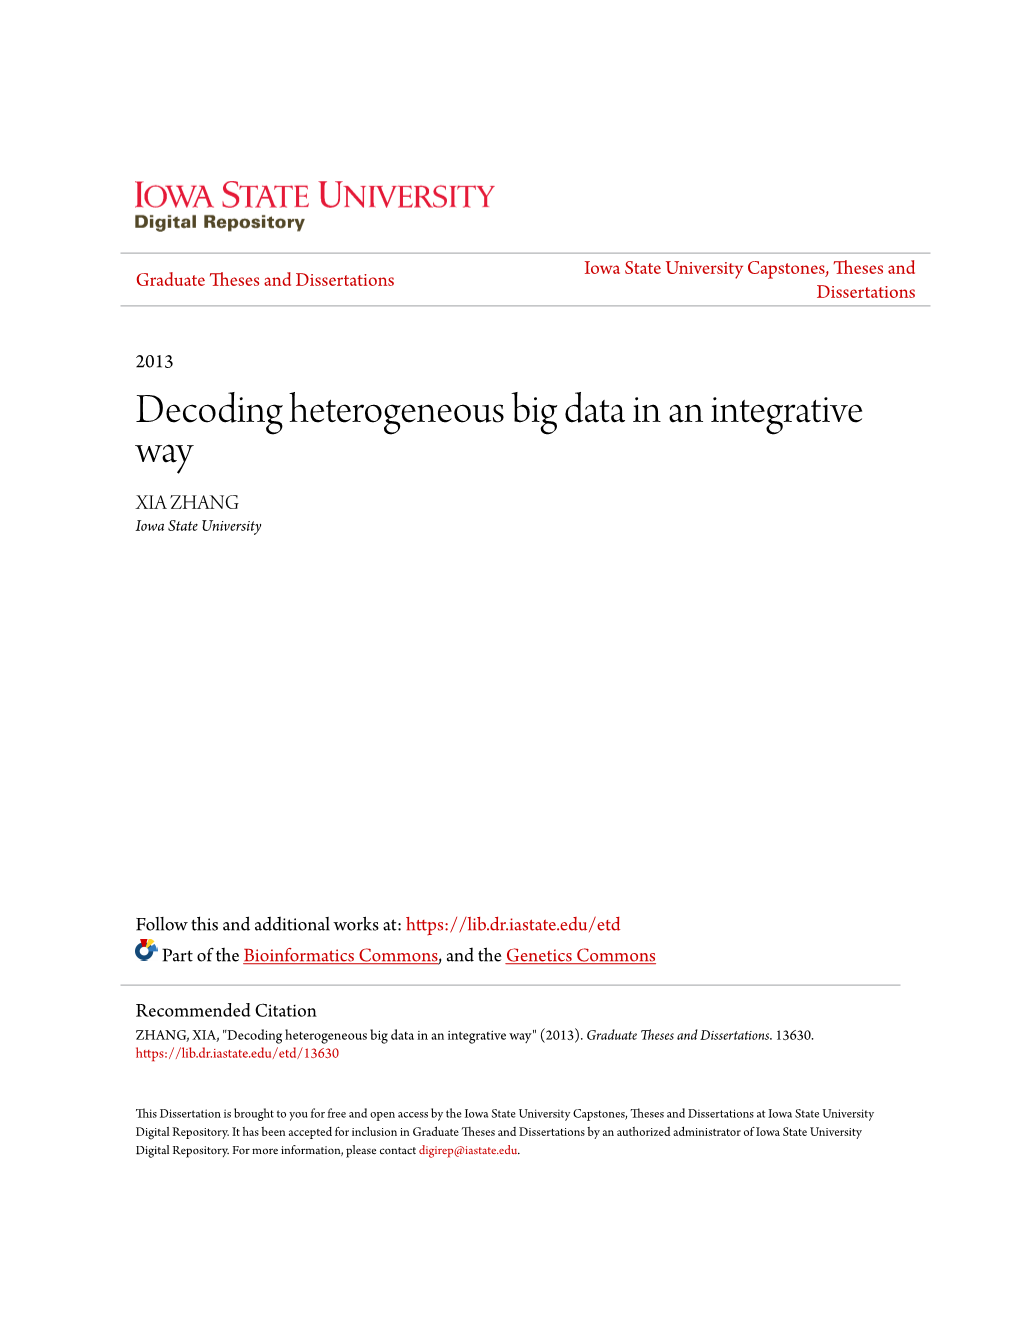 Decoding Heterogeneous Big Data in an Integrative Way XIA ZHANG Iowa State University